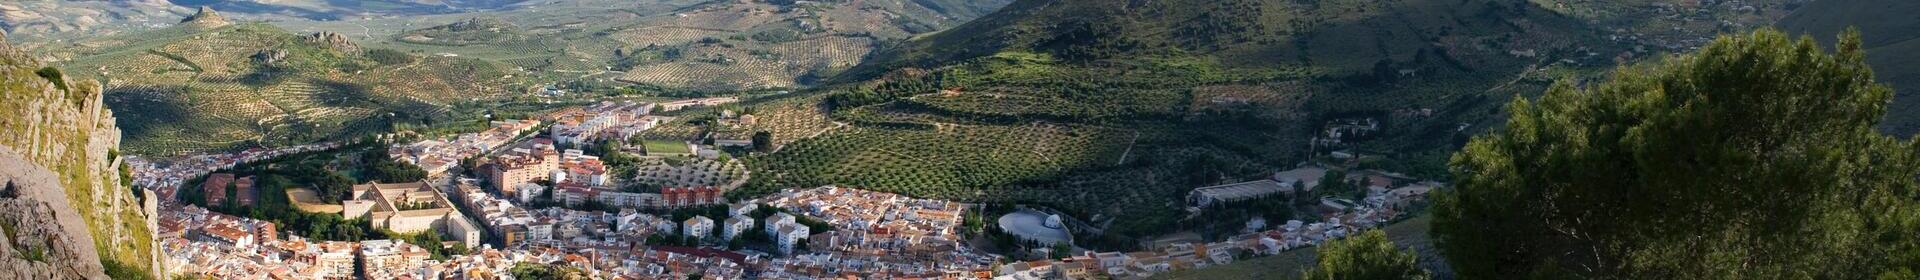 Jaén province